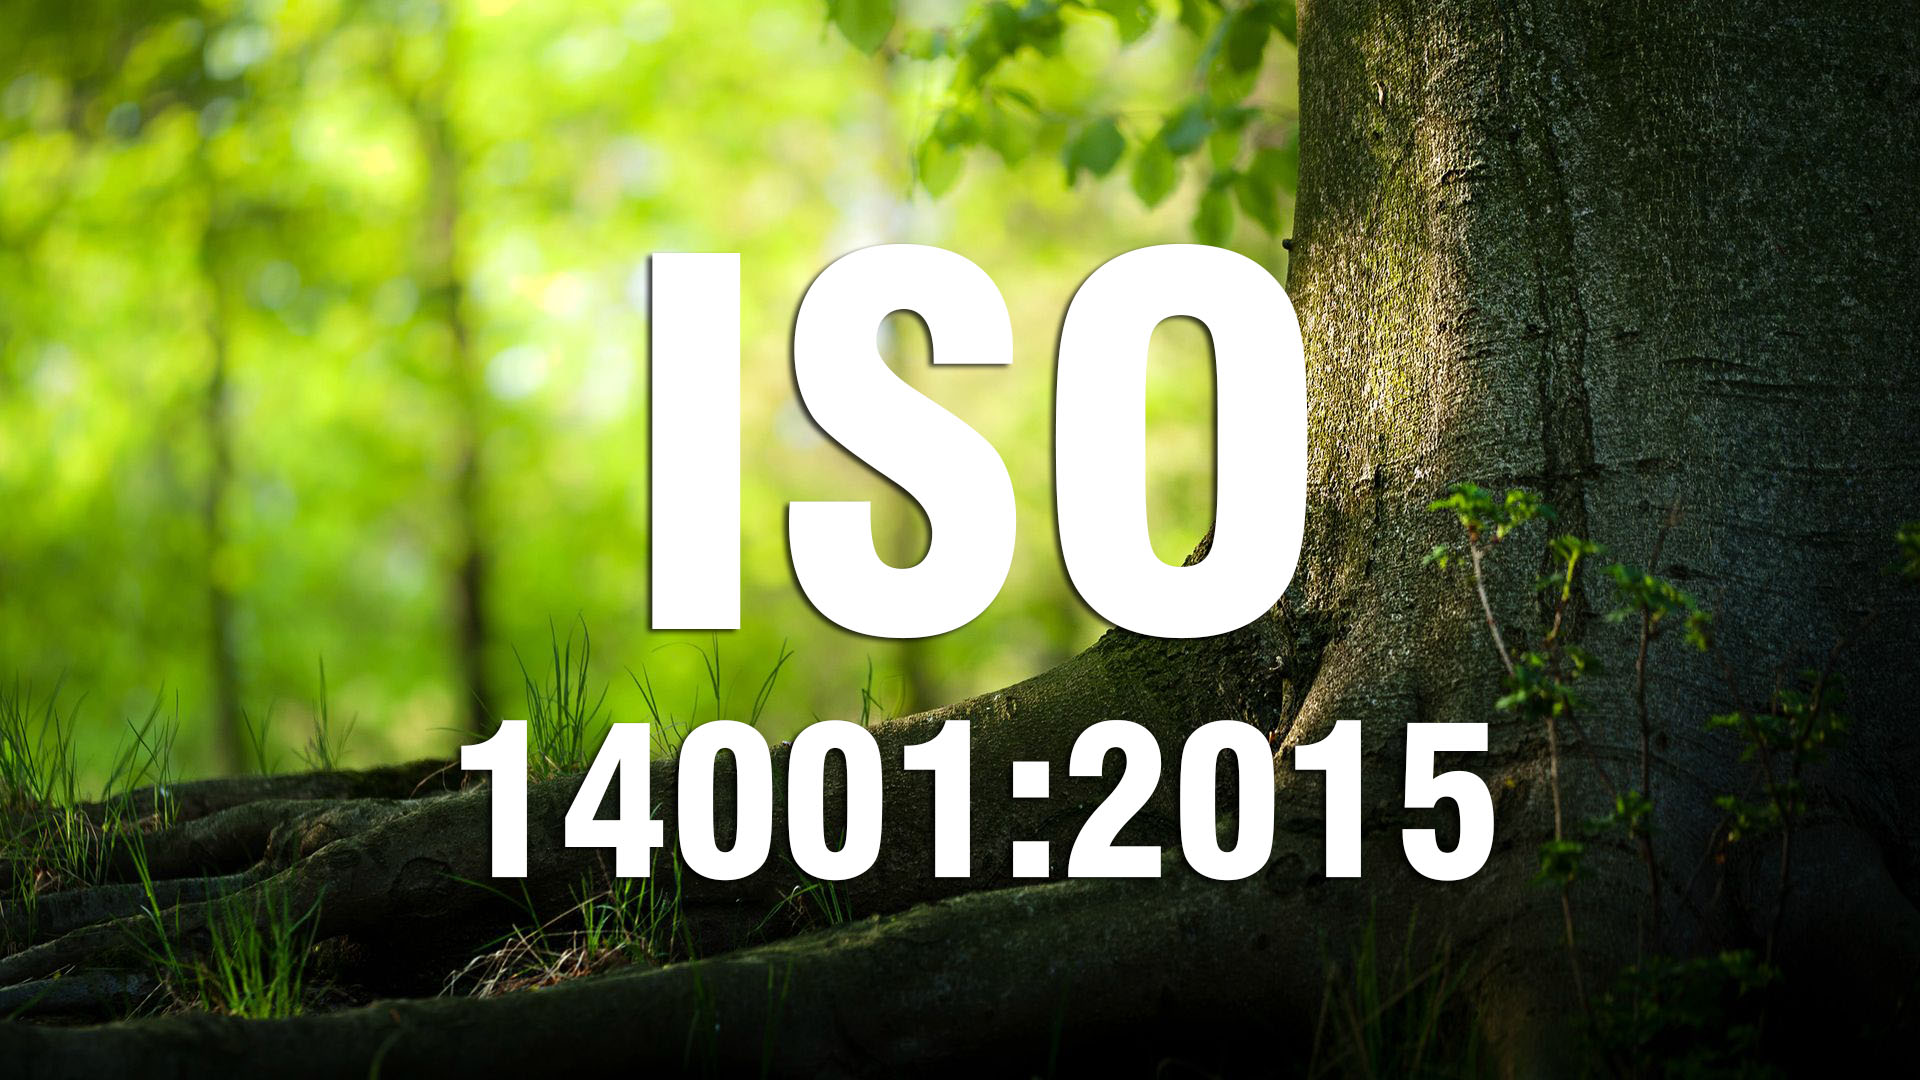 Tiêu chuẩn chứng chỉ ISO 14001 mới nhất có gì khác với bản cũ?